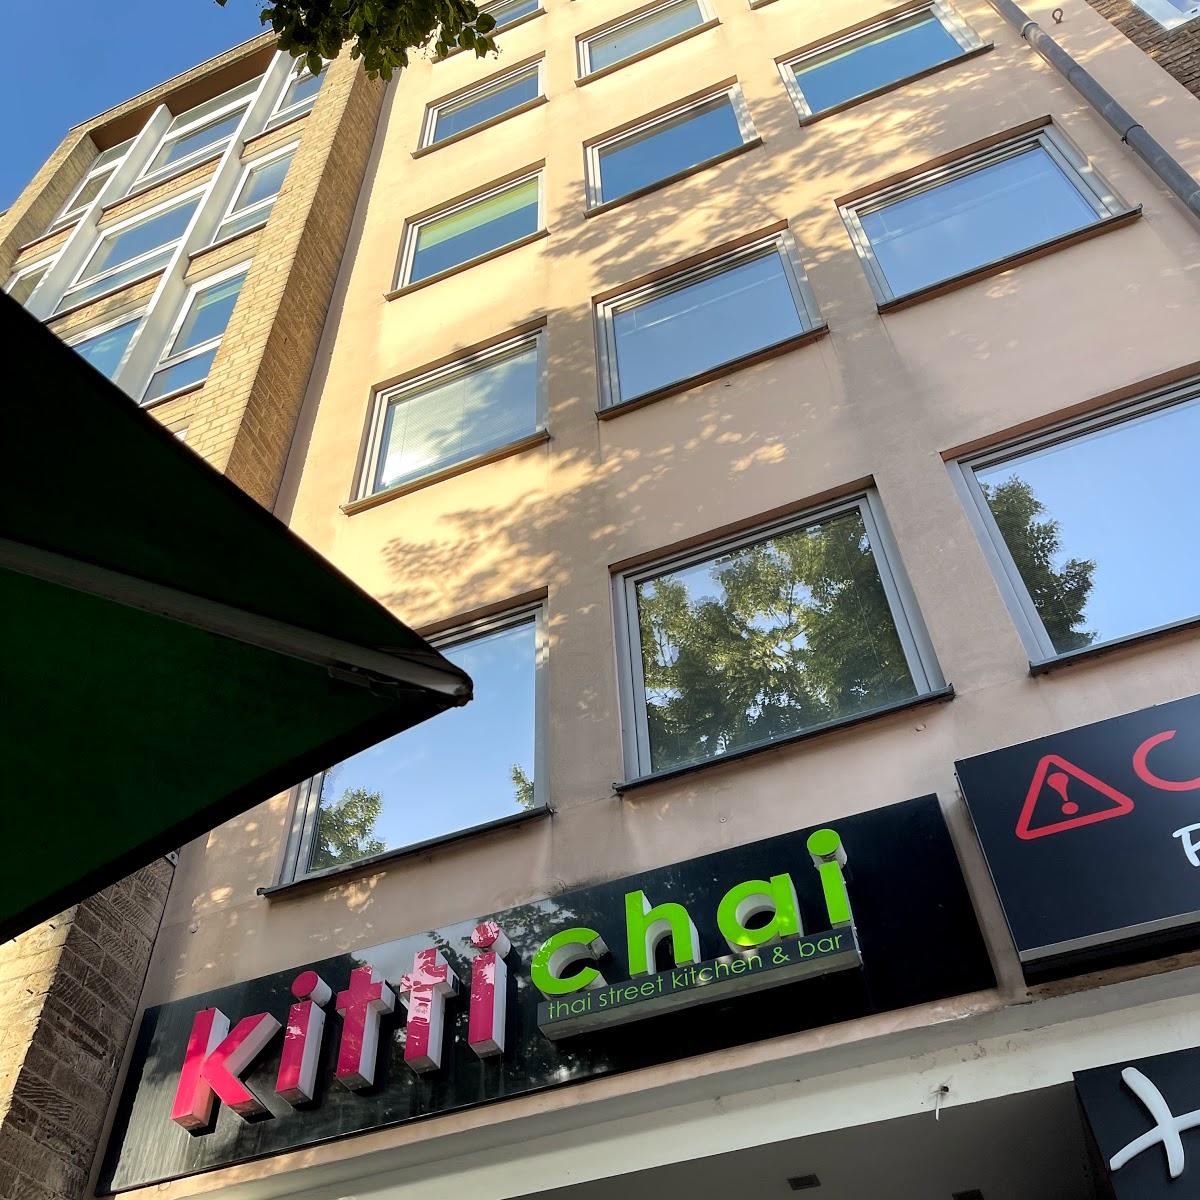 Restaurant "kittichai" in Köln